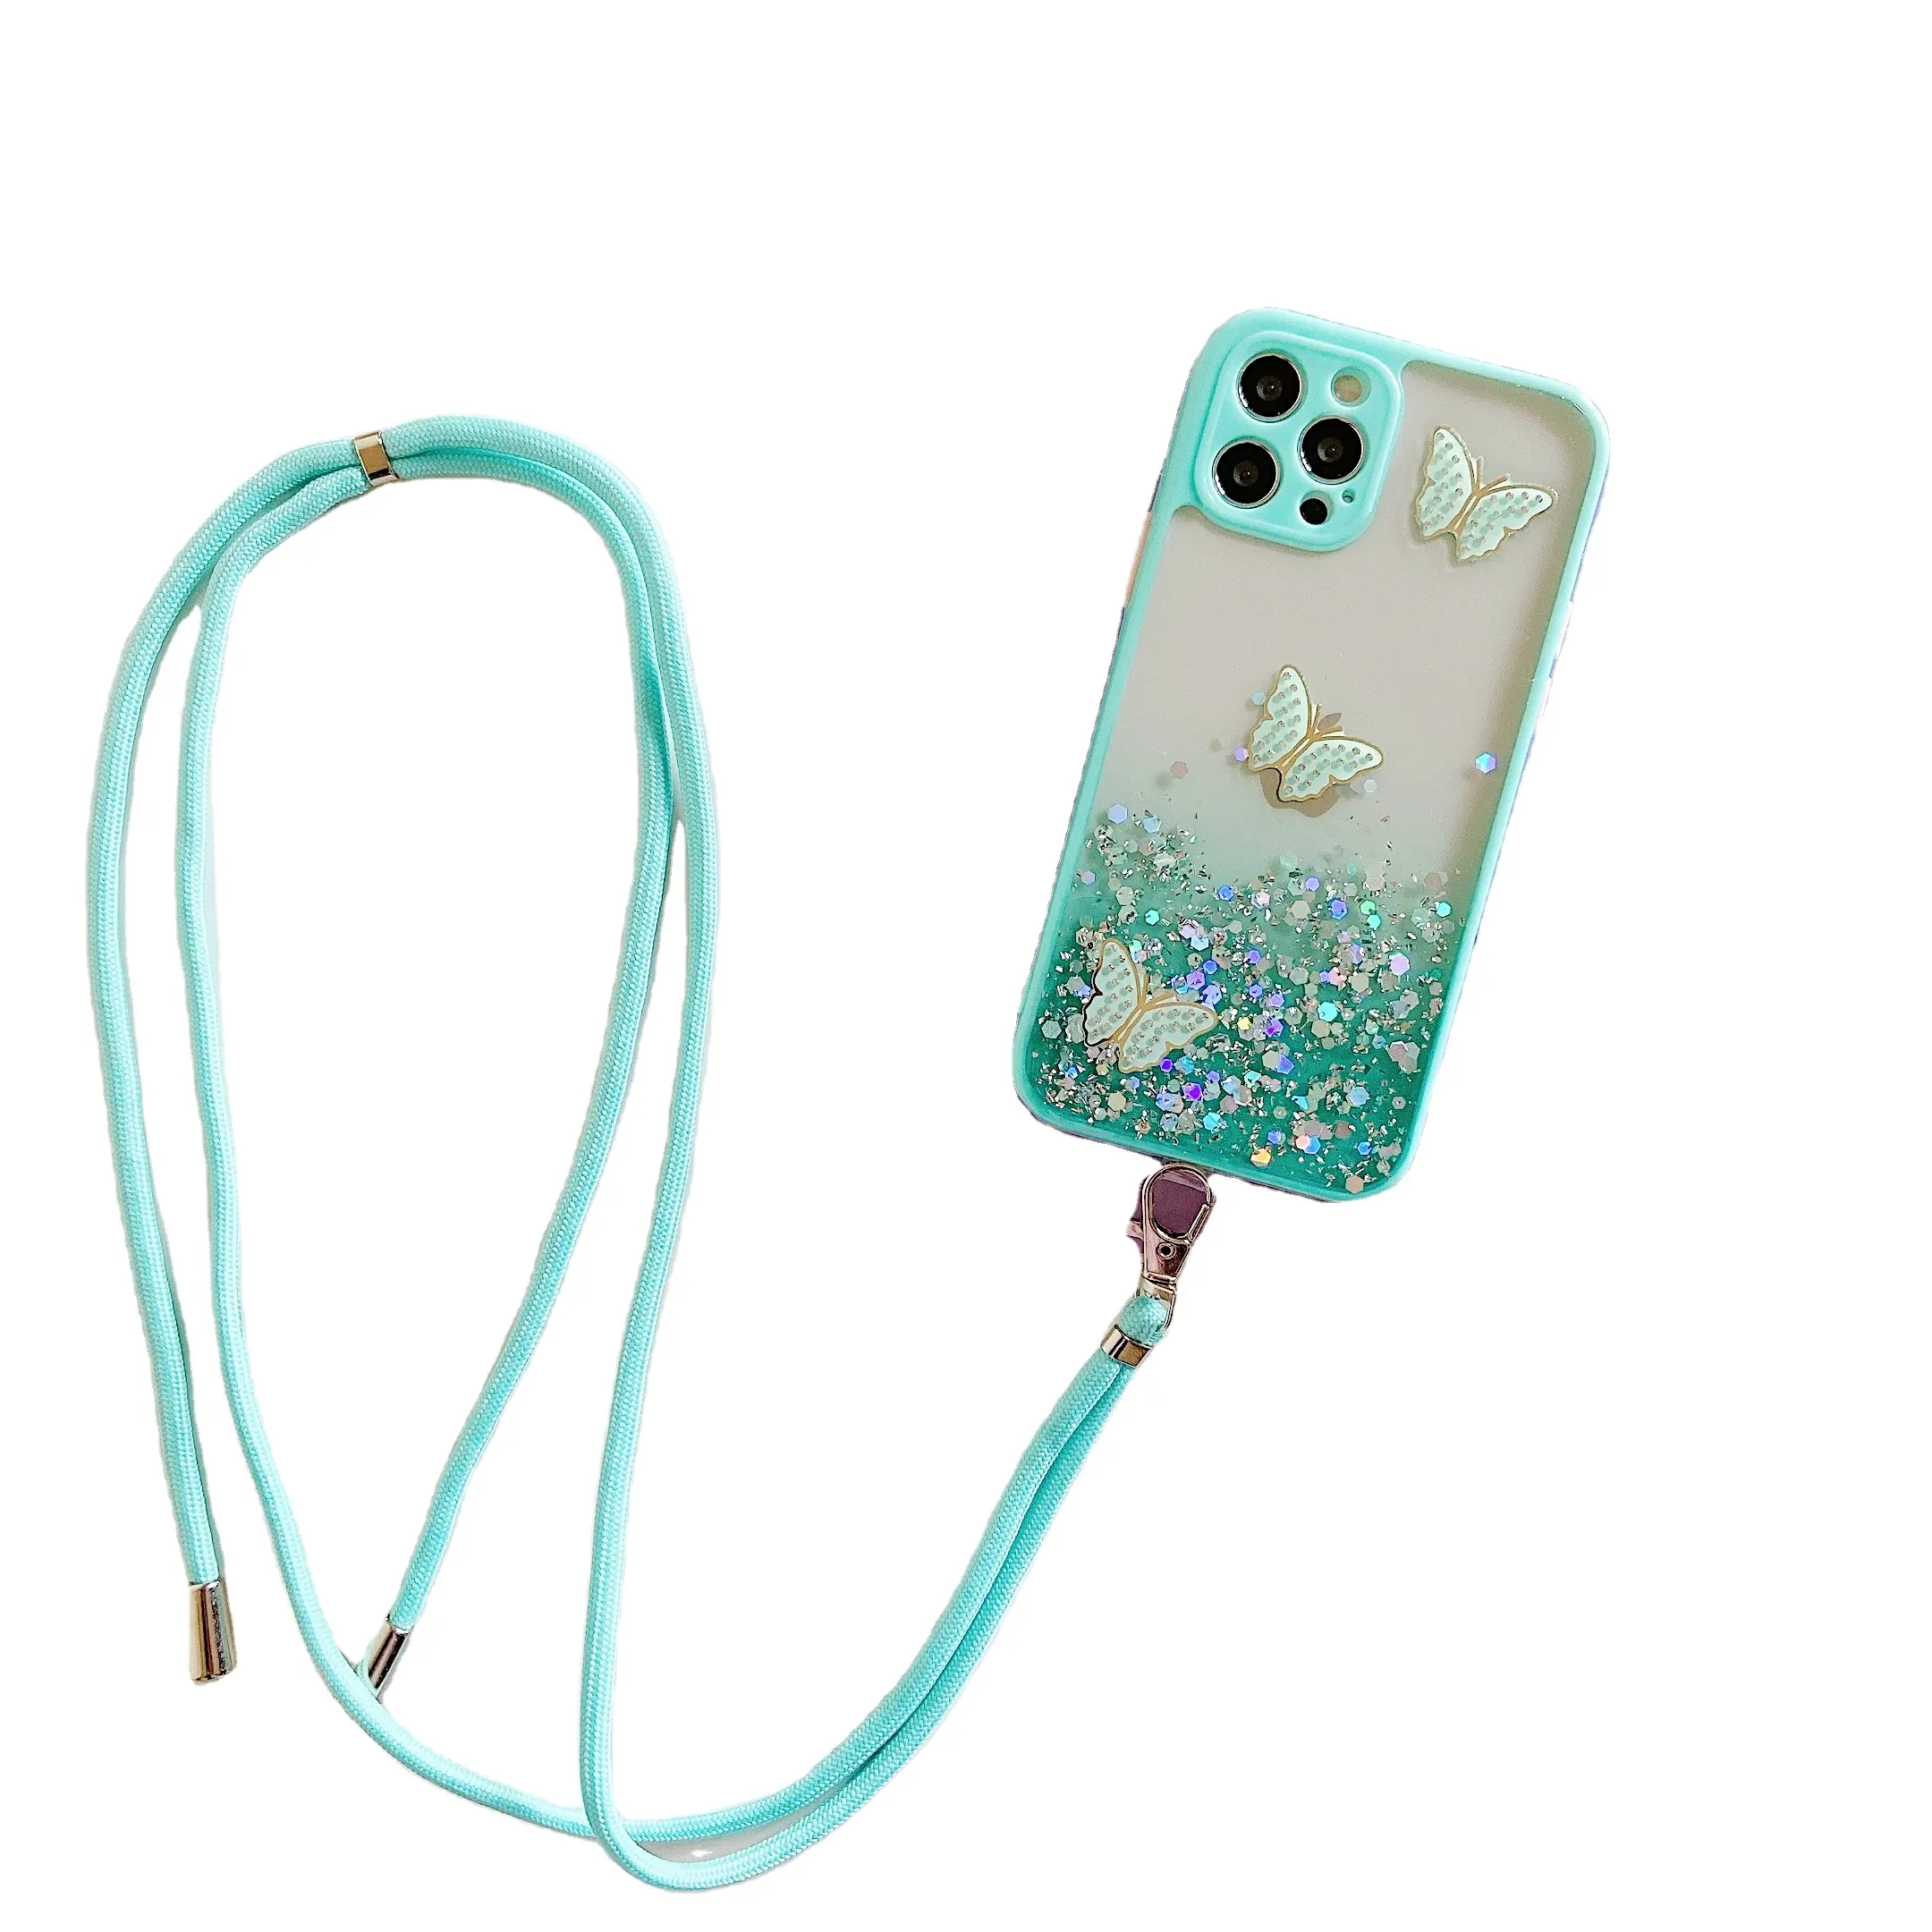 Girly Bling Glitter Schmetterlings muster mit Hals Spitze Kristall Weiche Silikon Rückseite Niedliche Telefon hülle für Iphone Promax